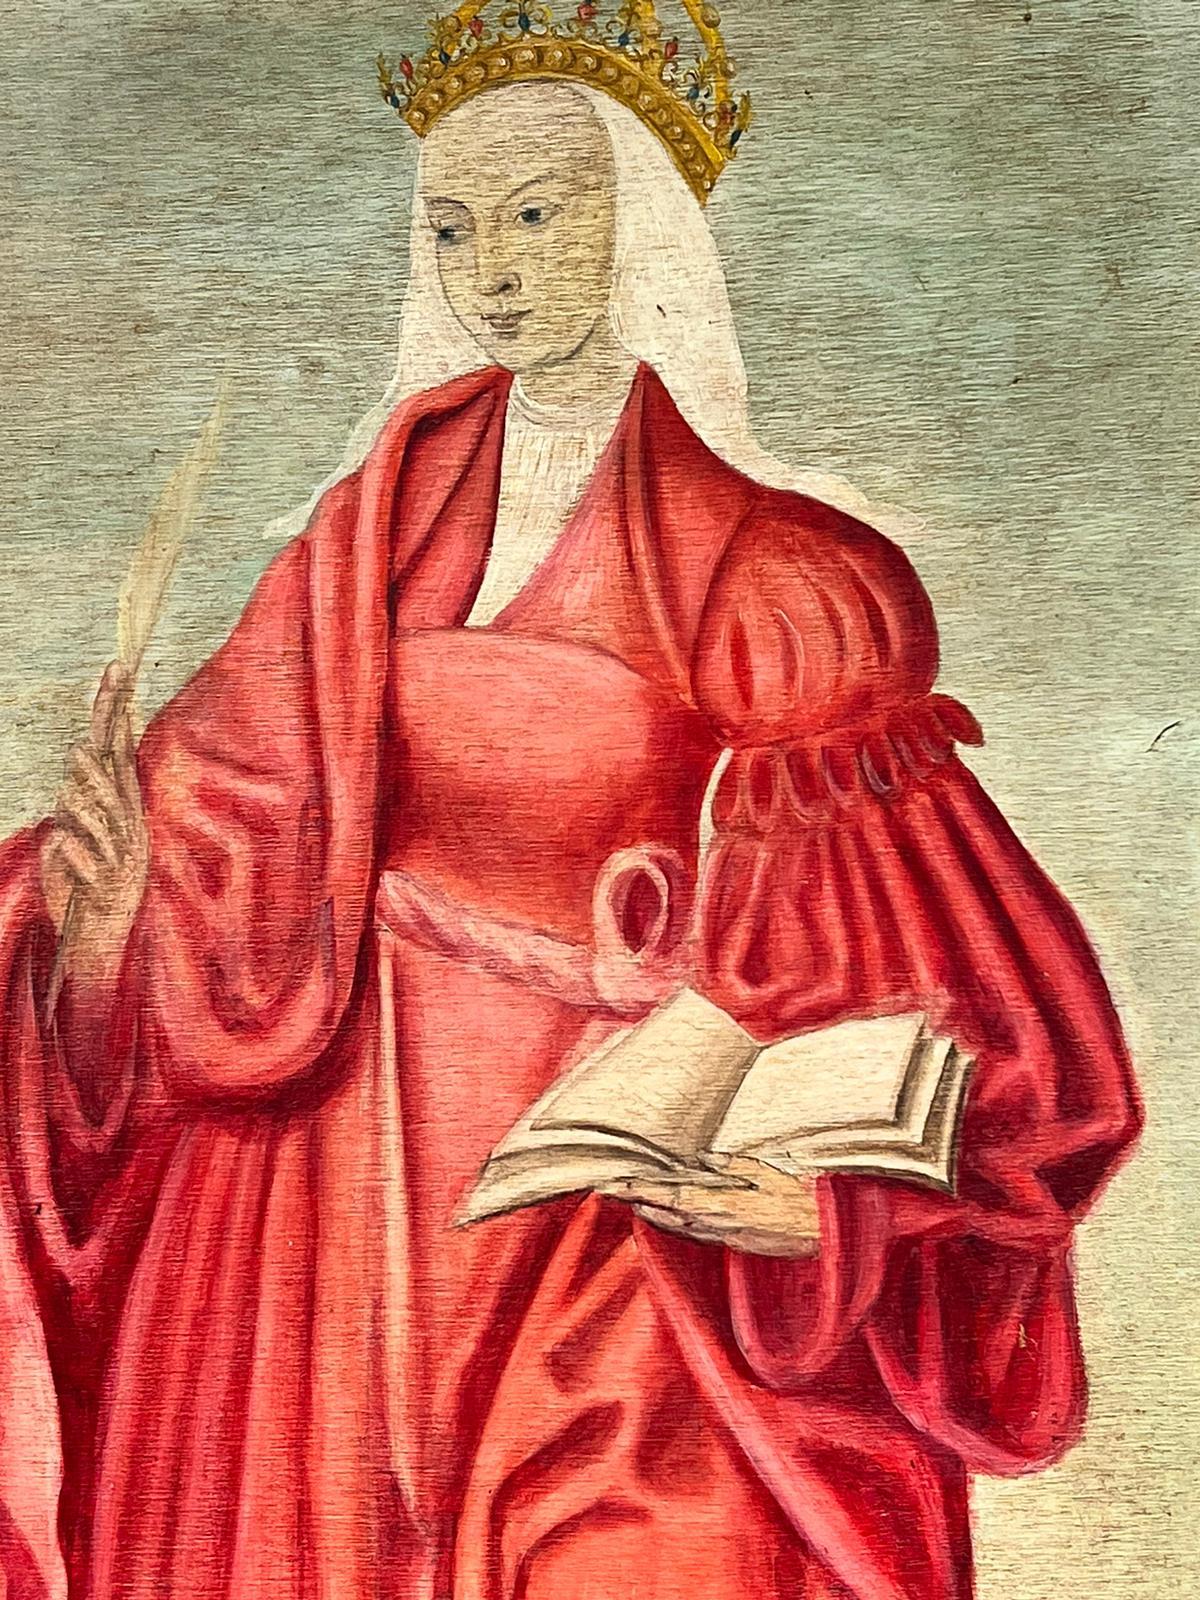 Porträt der Heiligen Catherine im mittelalterlichen Renaissance-Stil, stehend in Landschaft, Öl – Painting von Renaissance style 